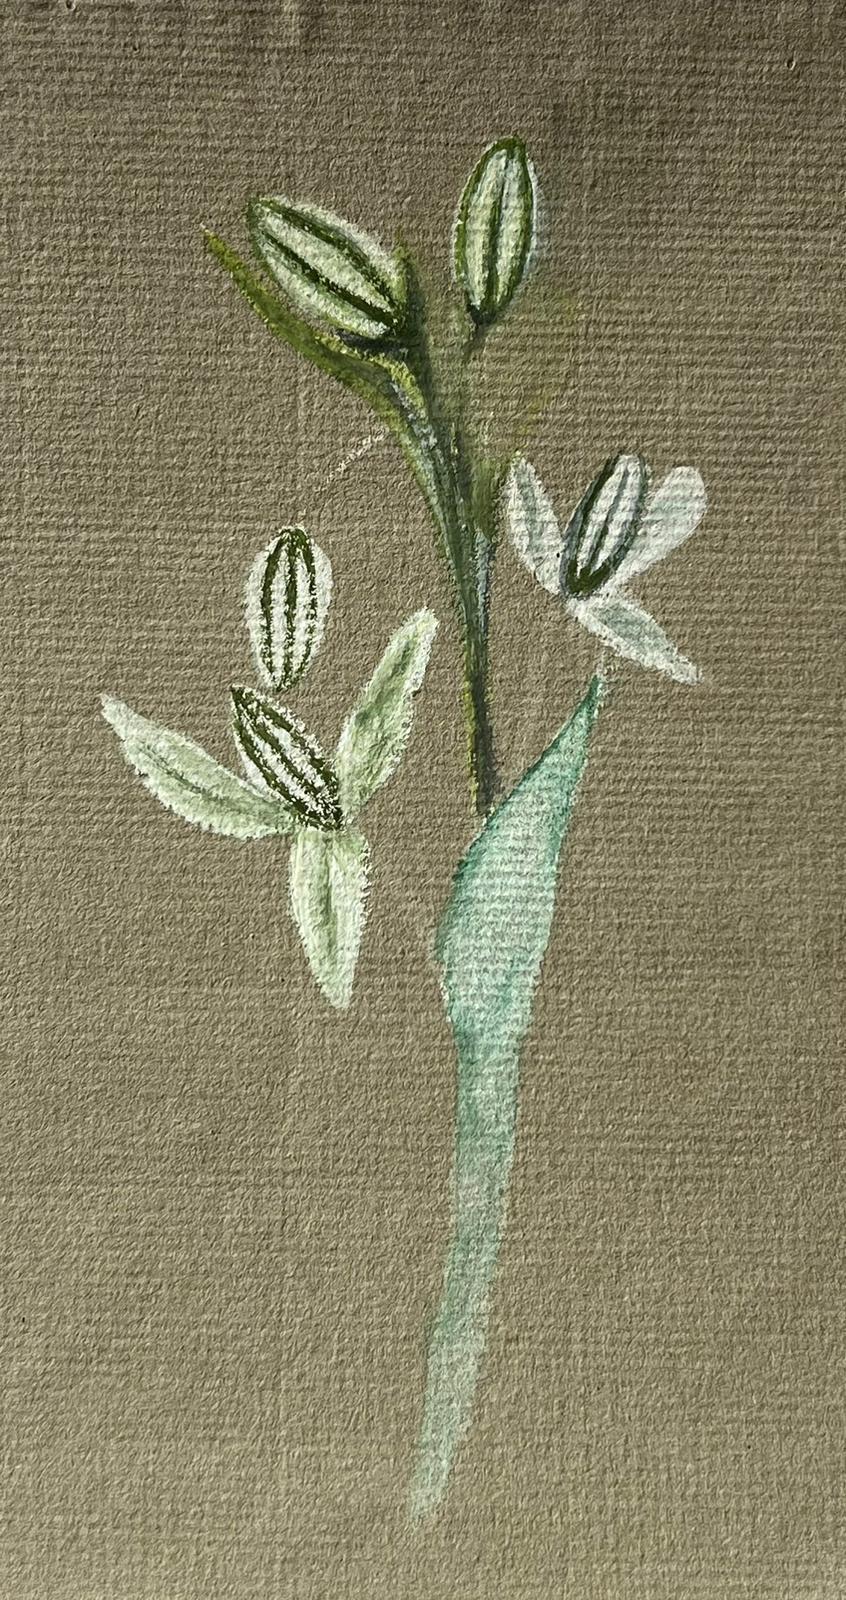 Antikes britisches botanisches Gemälde mit weißer Blumenpflanze, antik